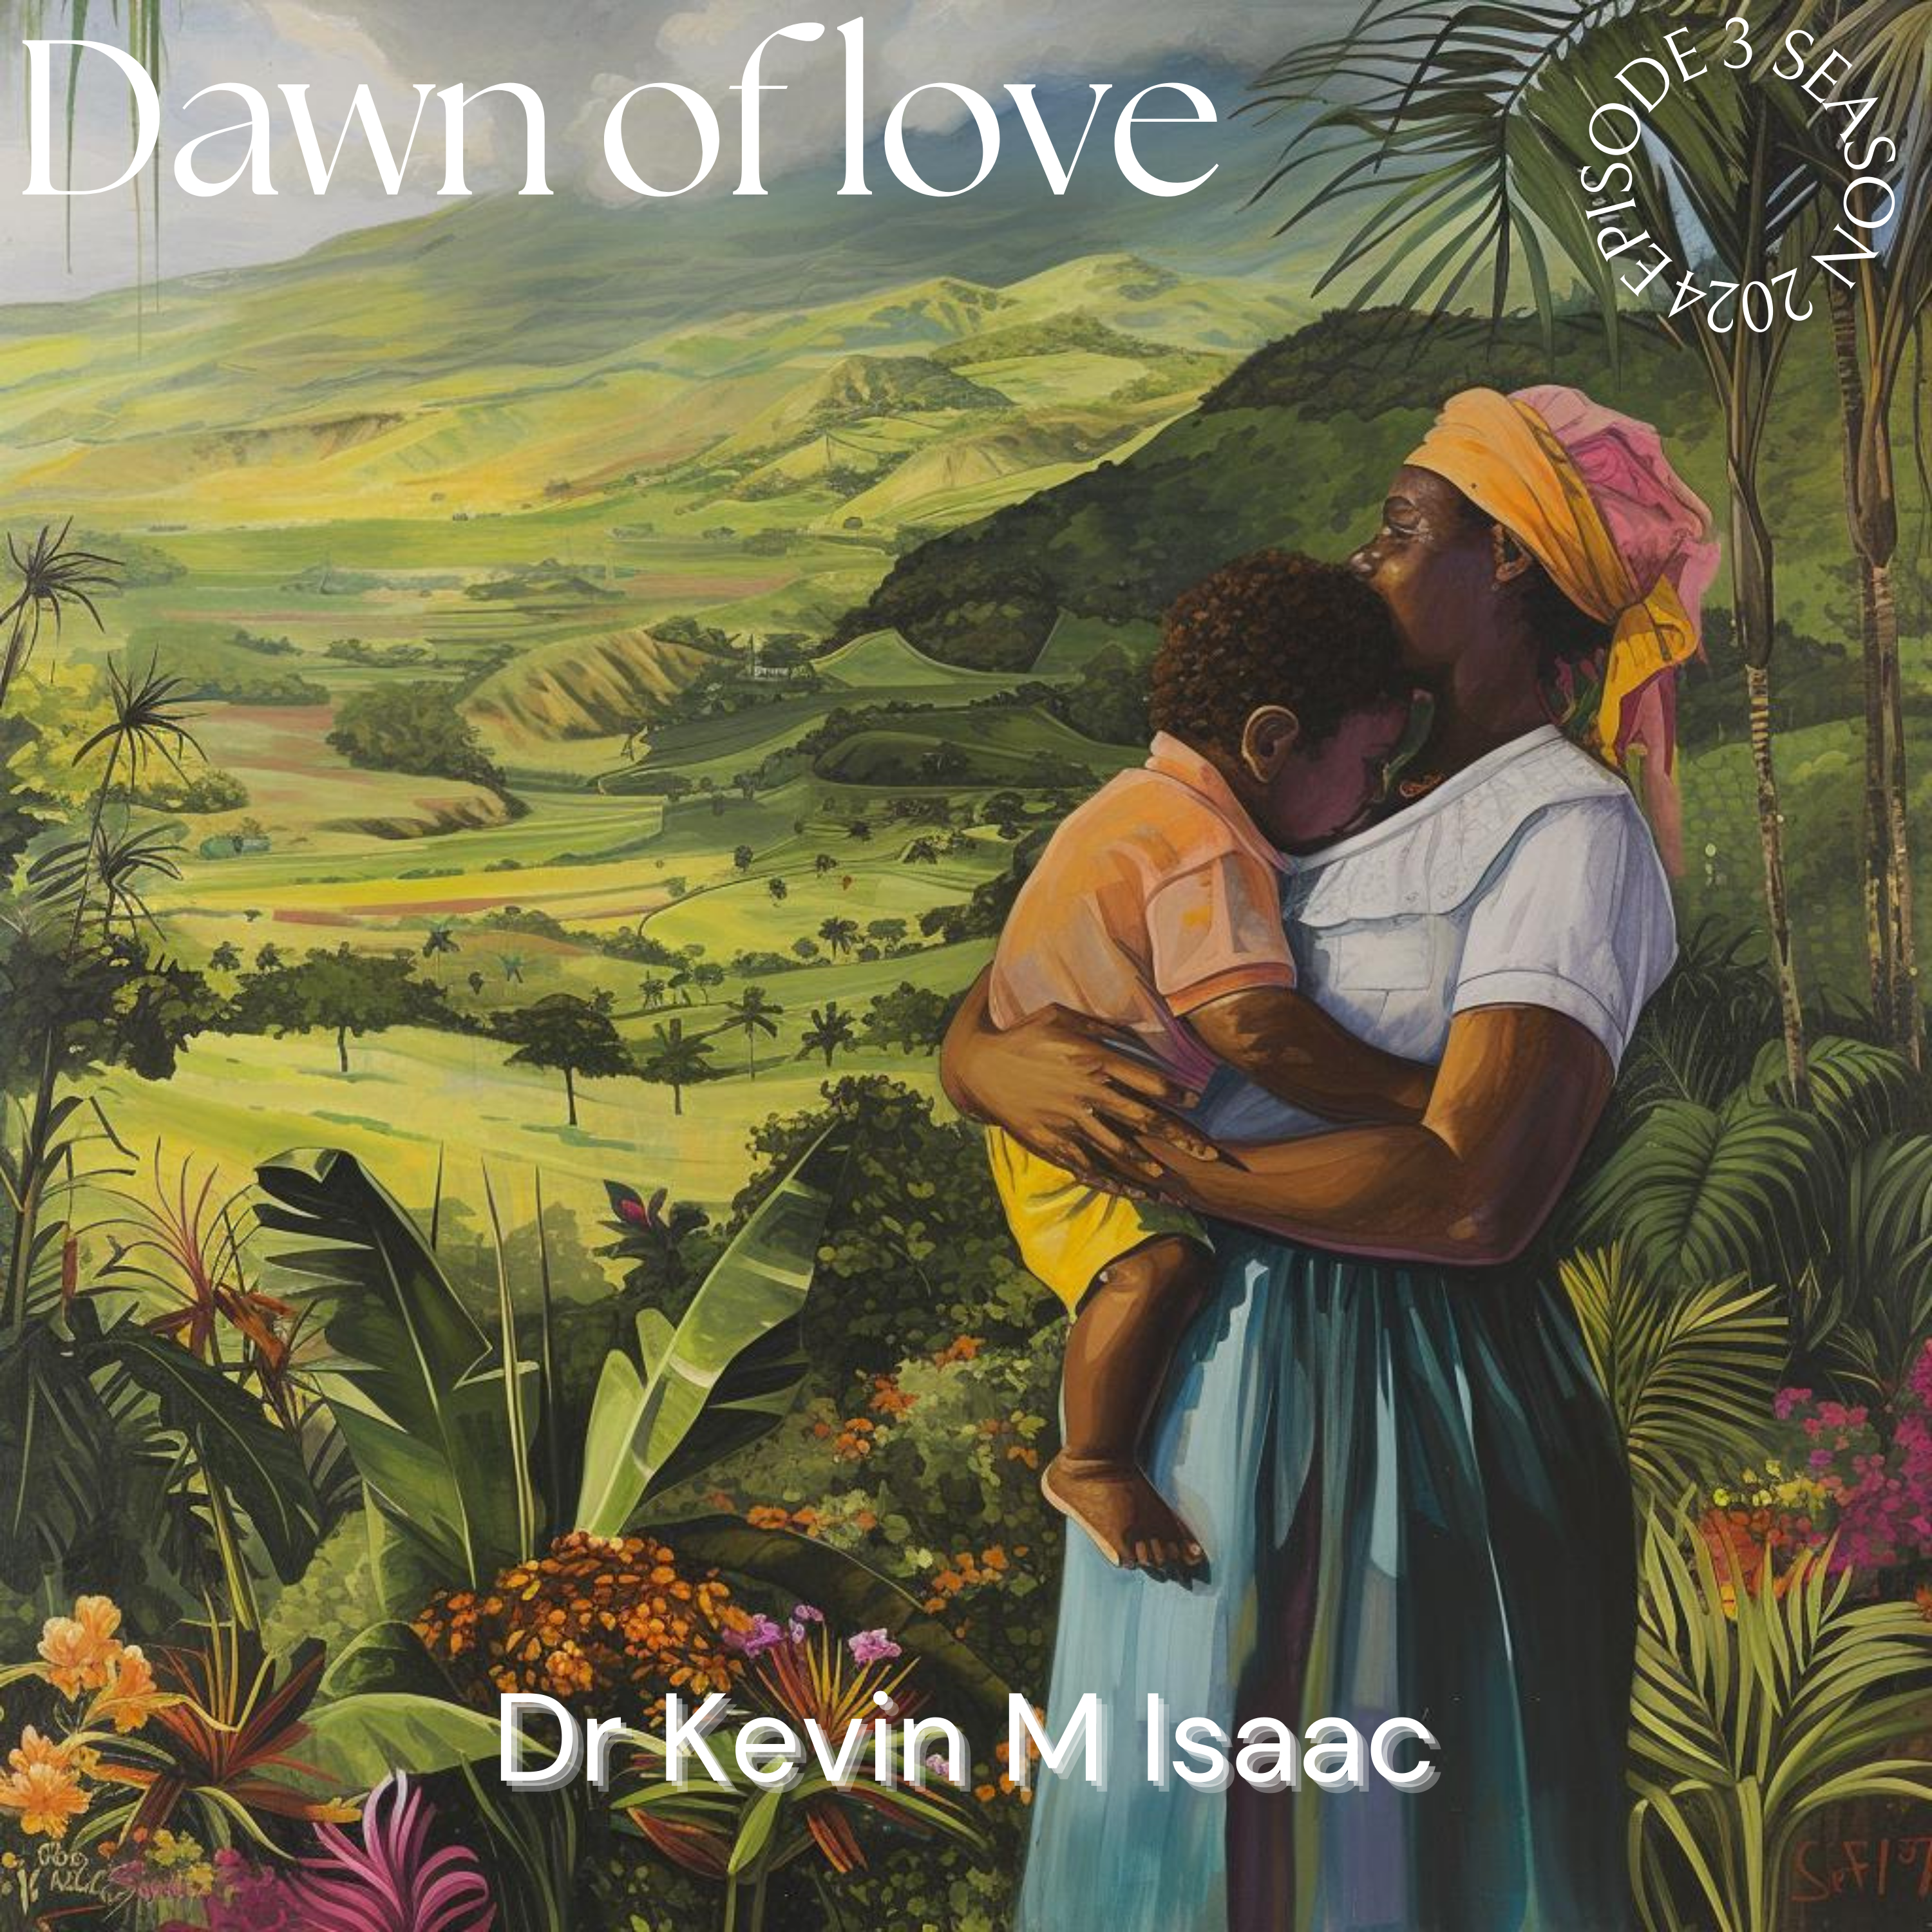 Dawn of love